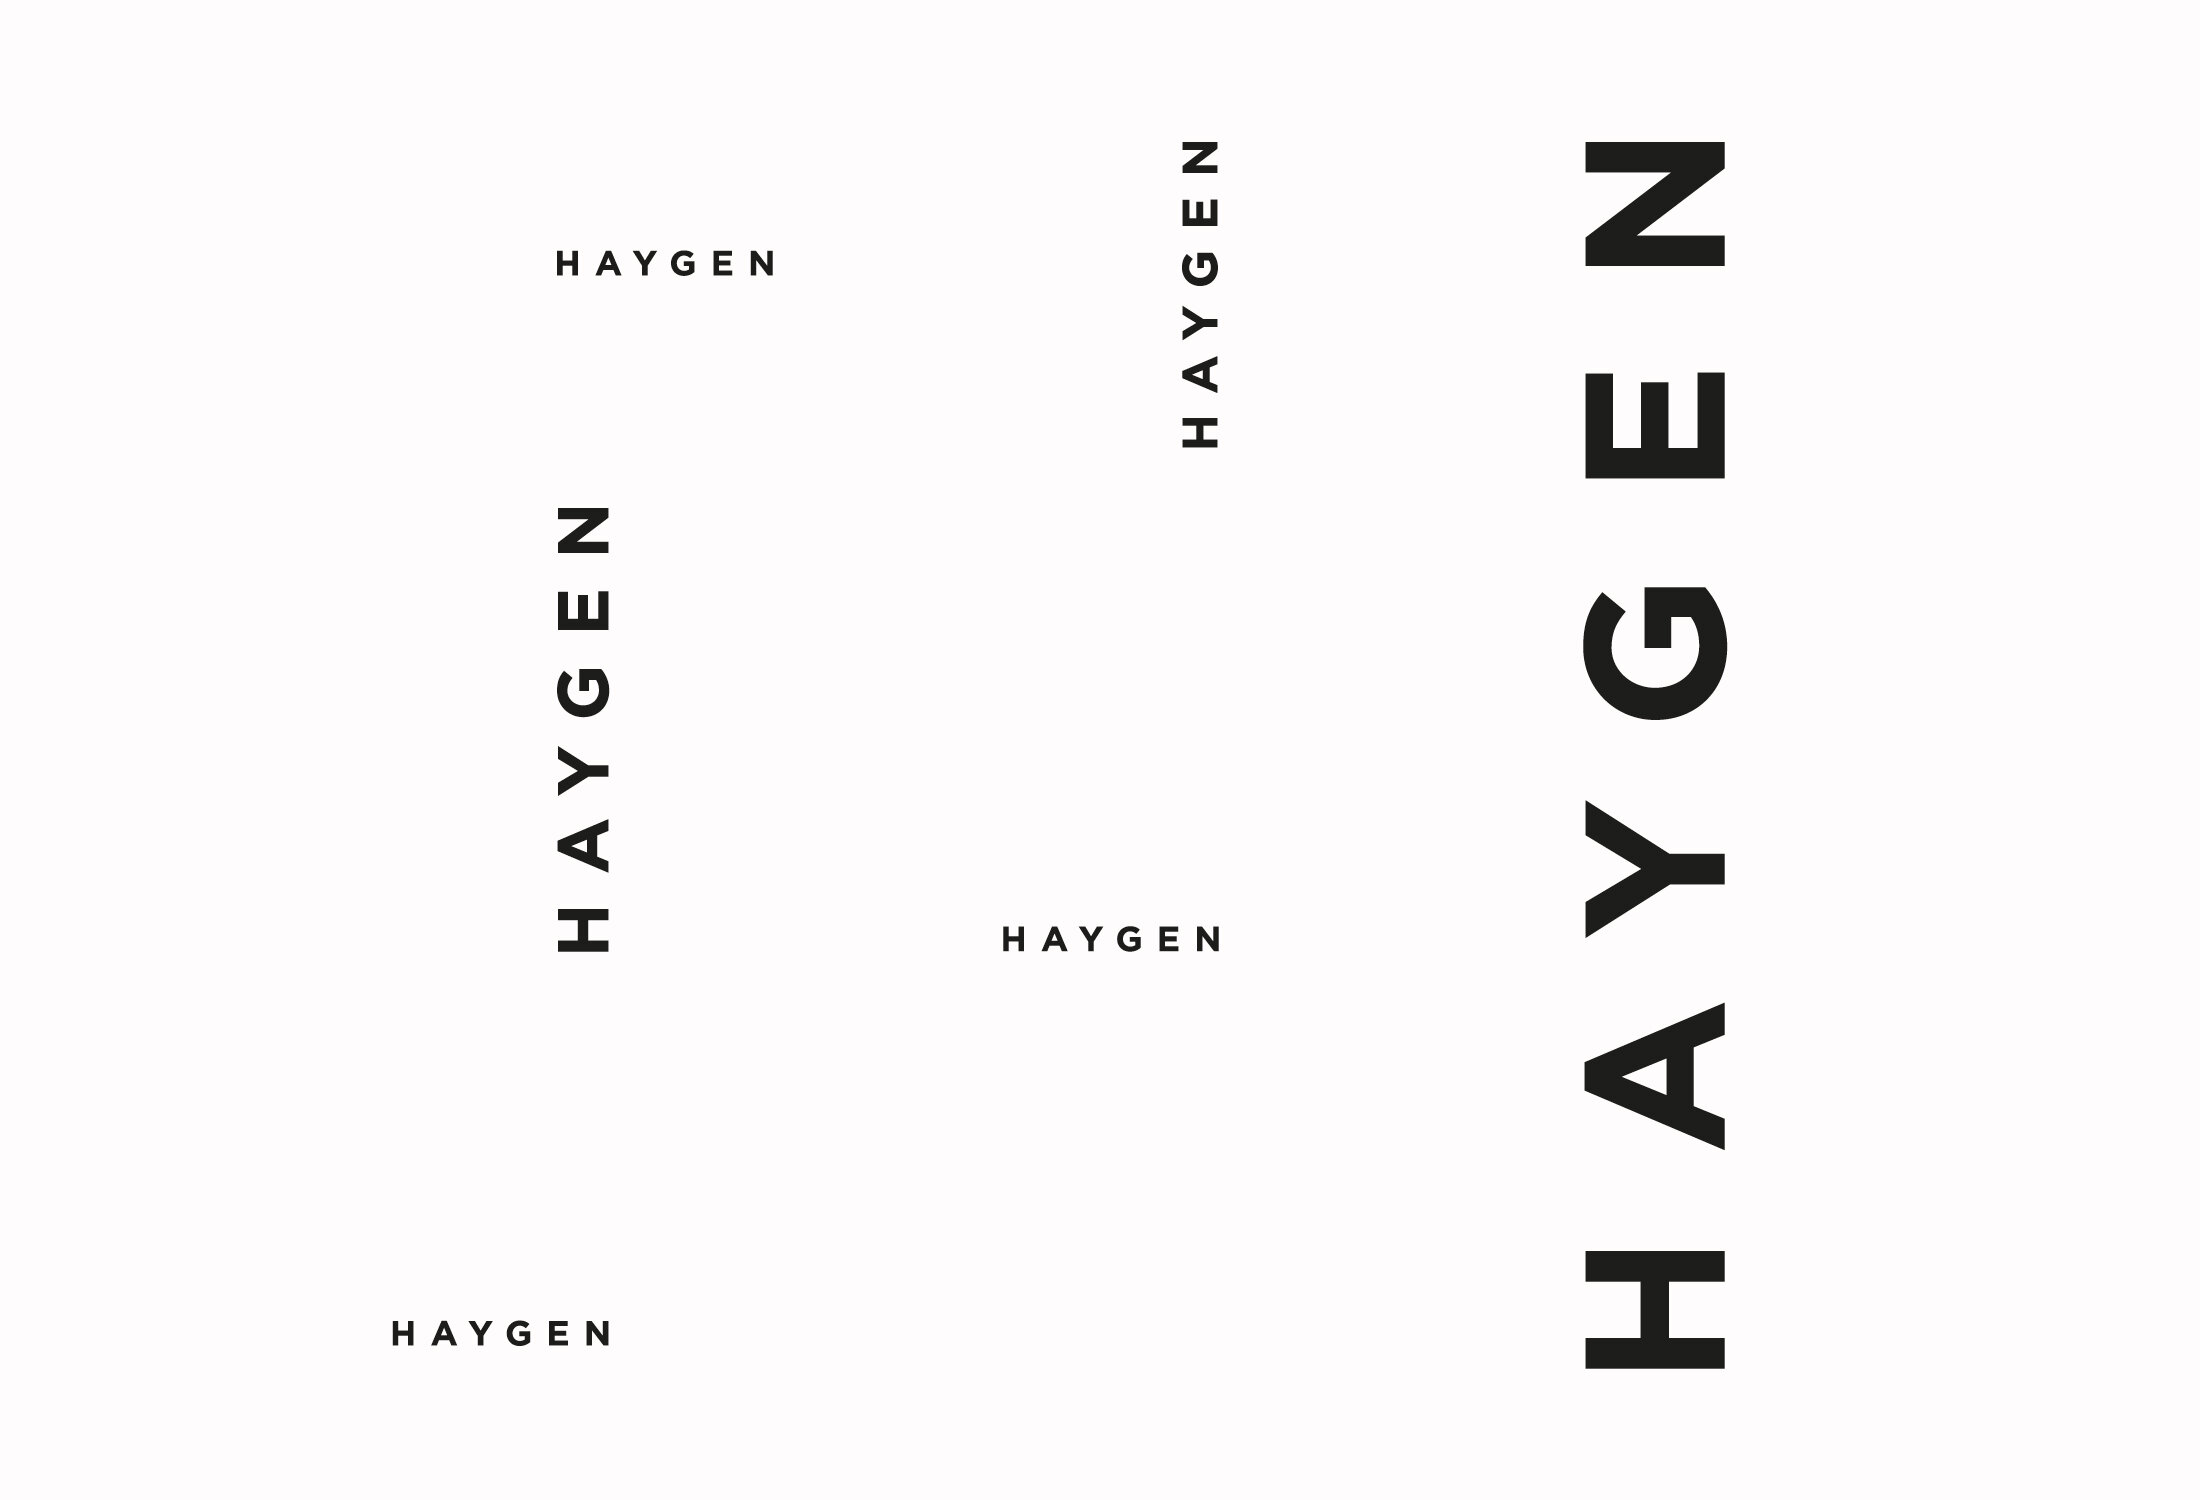 Haygen+Soft+Paper.jpg